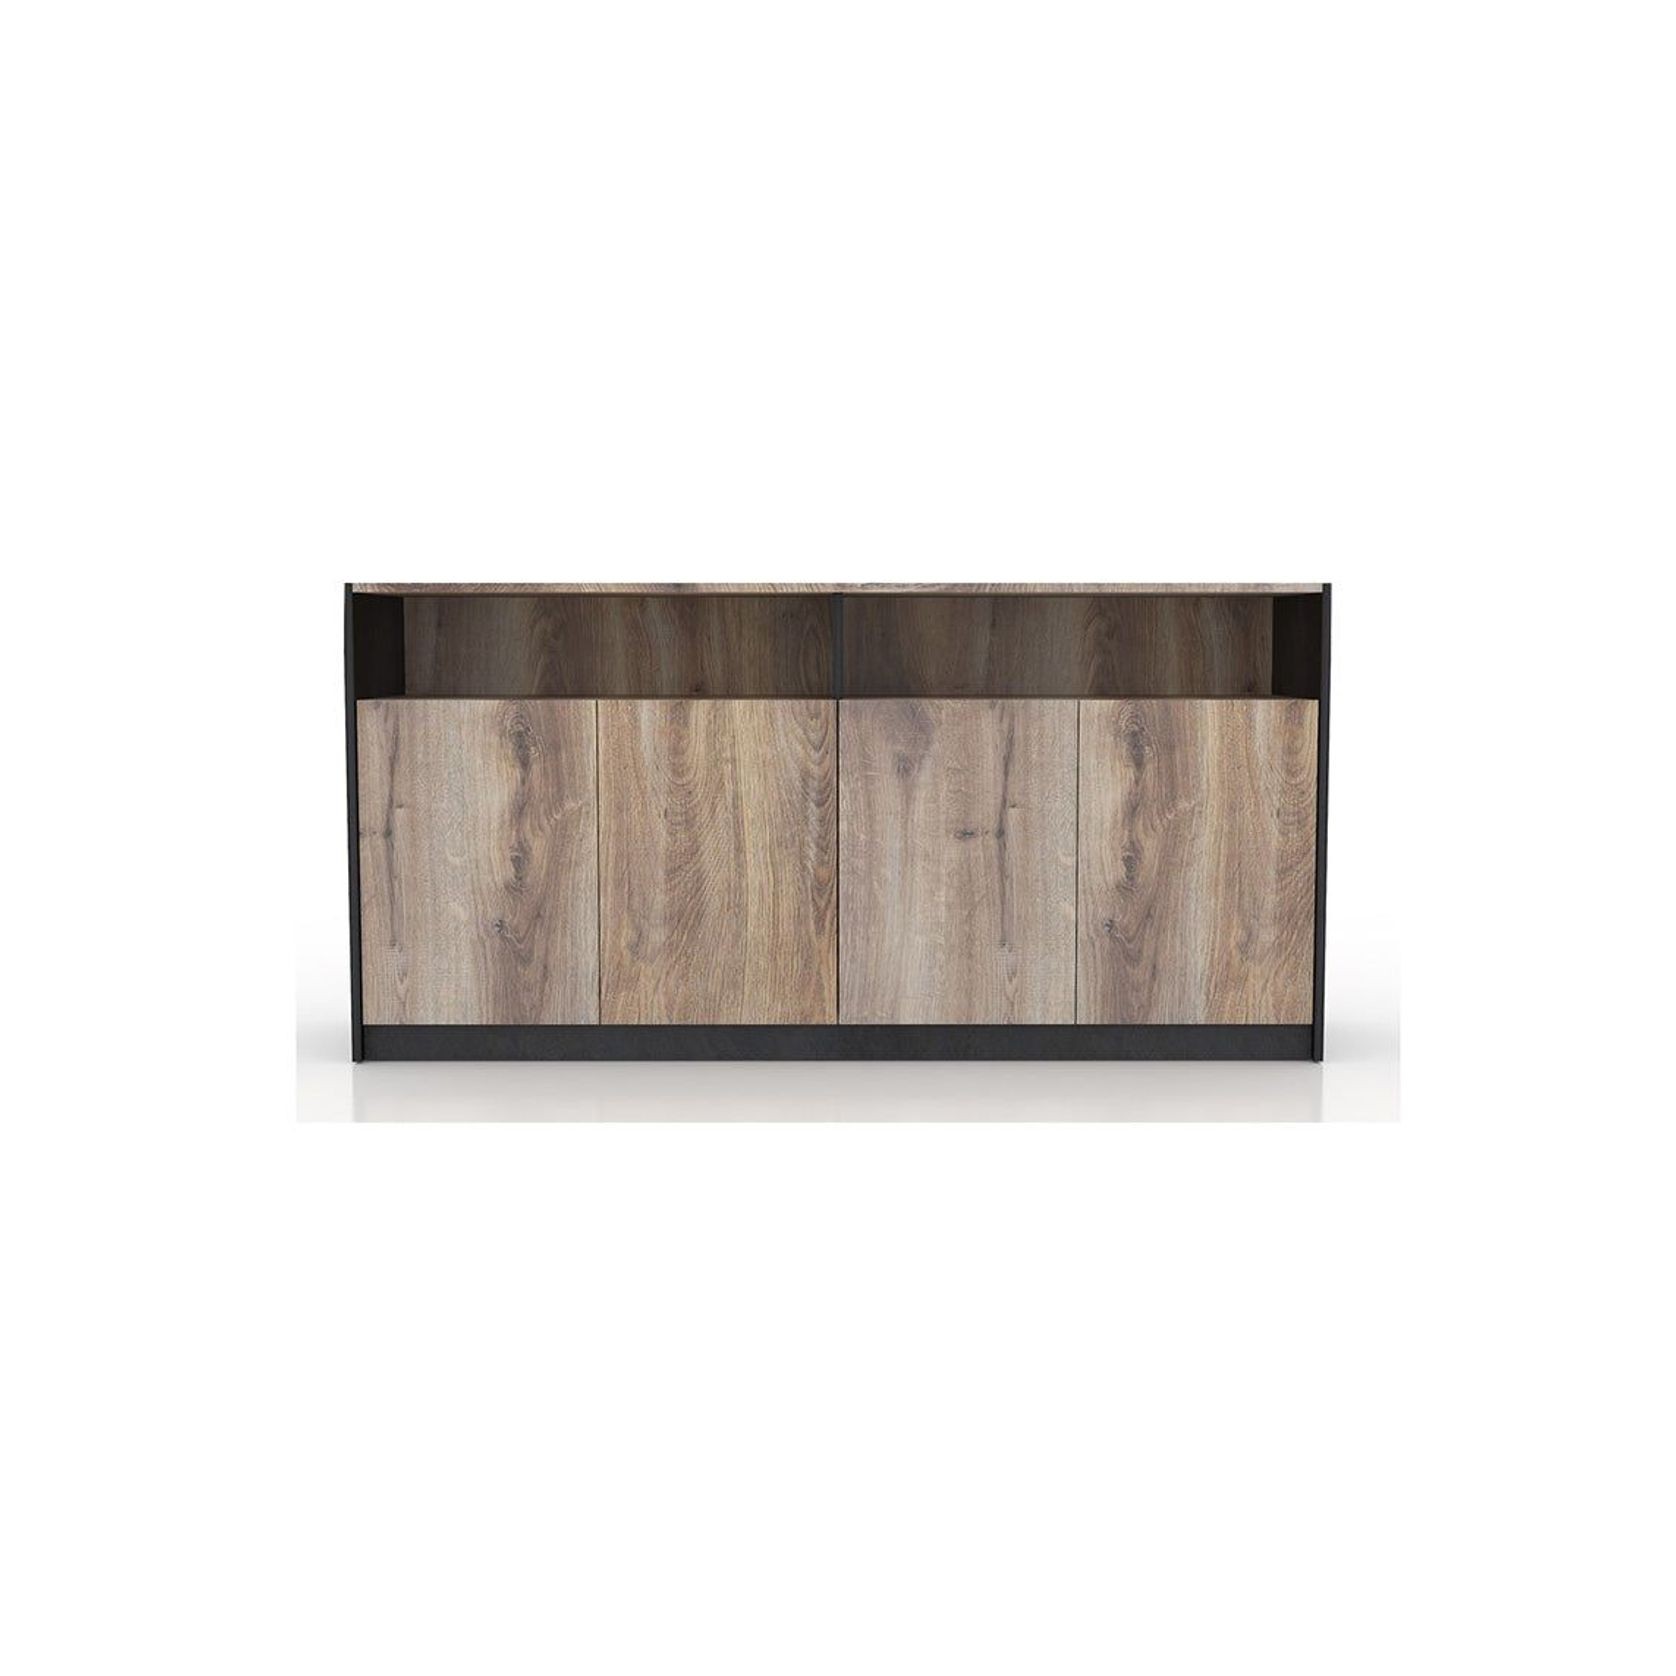 ARTO Credenza Cabinet 157cm - Warm Oak & Black gallery detail image